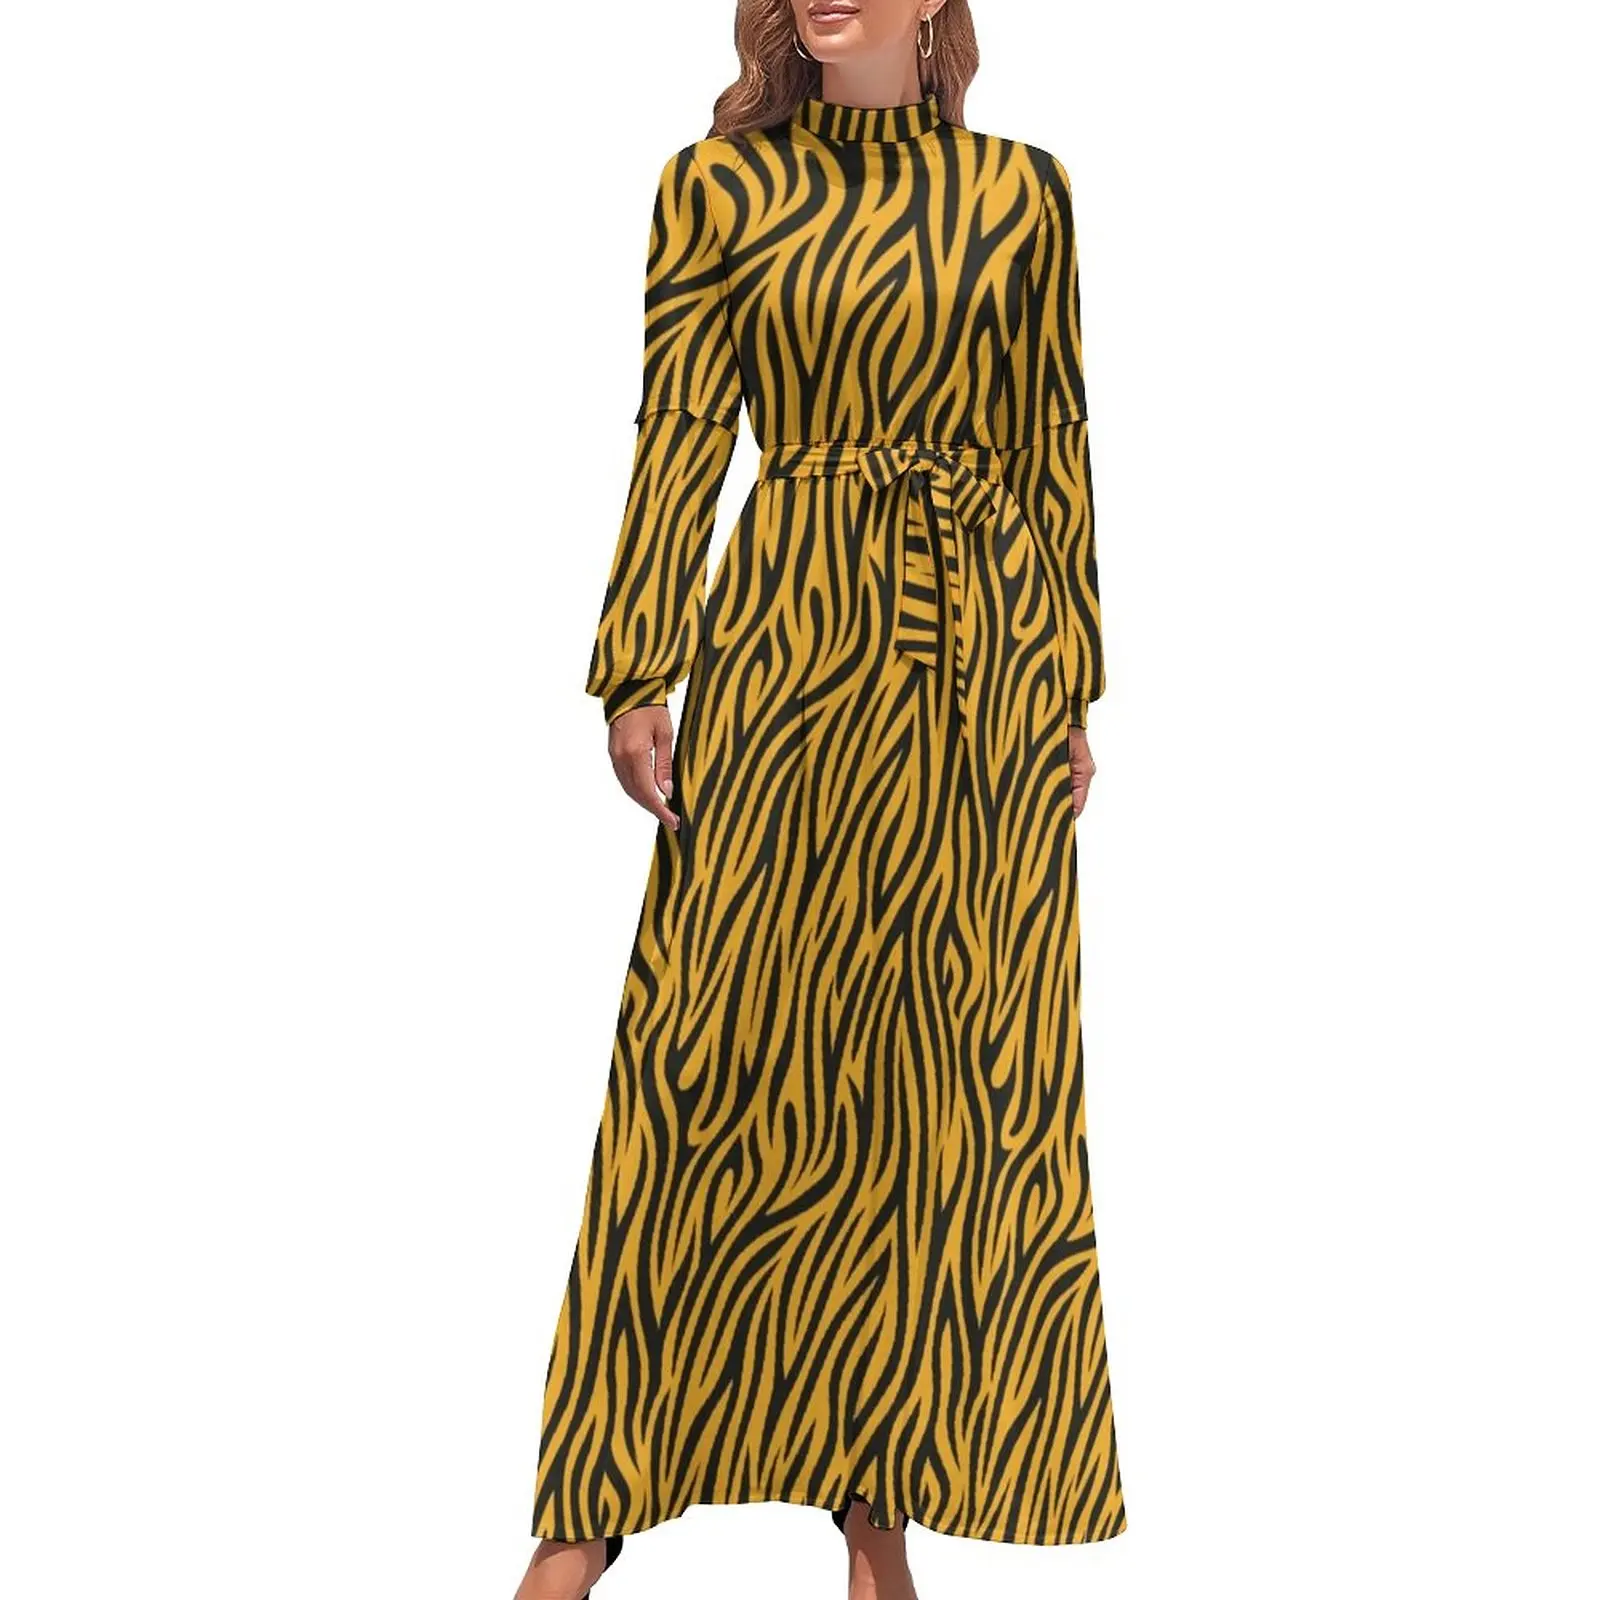 

Дизайнерское платье с принтом тигра, корейское модное пляжное платье в золотую полоску в стиле бохо, женское длинное платье макси с длинным рукавом и высокой талией